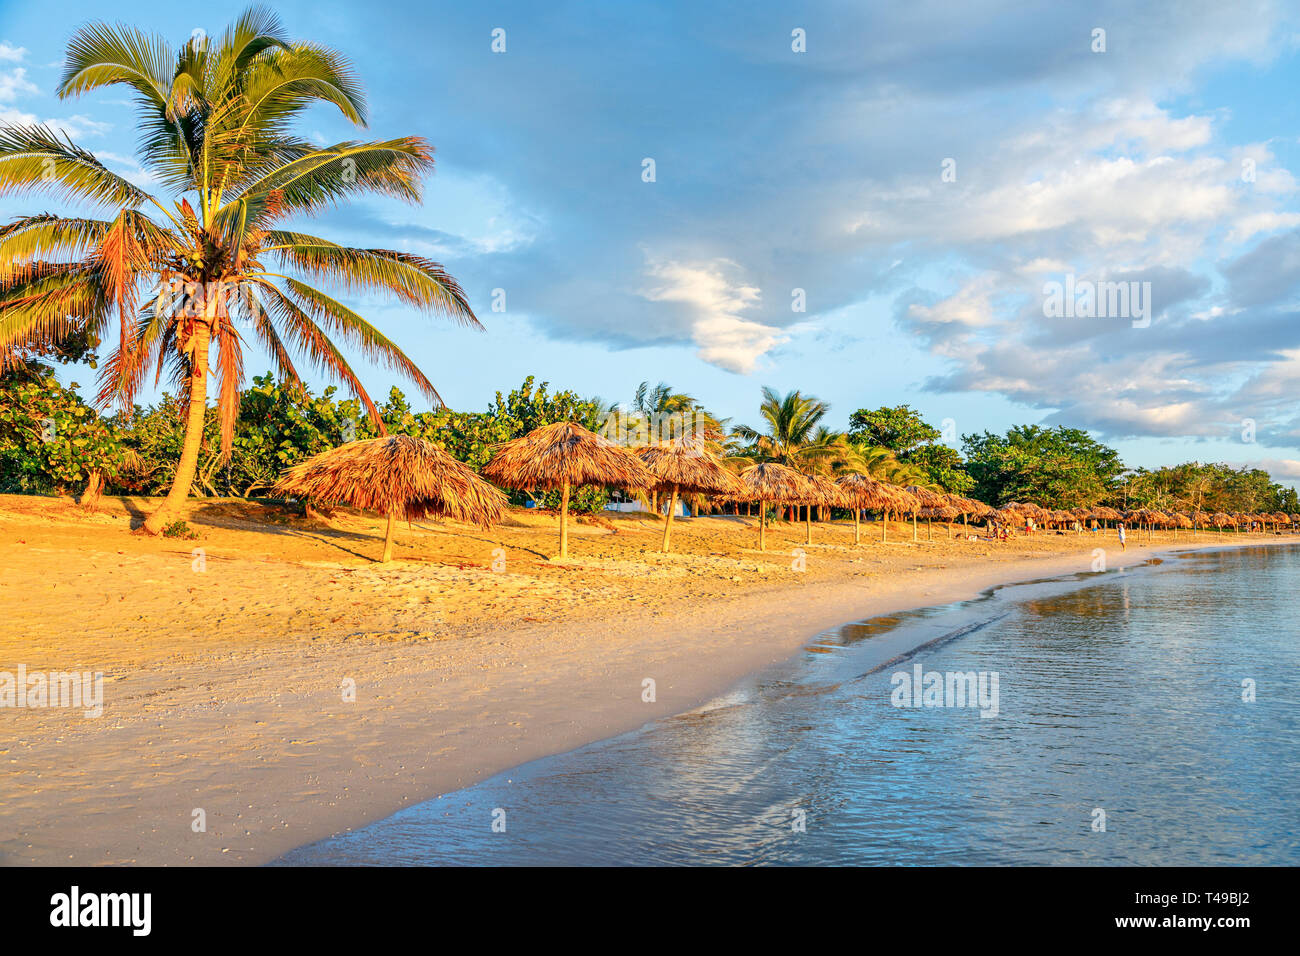 Rancho Luna karibischen Strand mit Palmen und Stroh Sonnenschirme am Ufer, Cienfuegos, Kuba Stockfoto